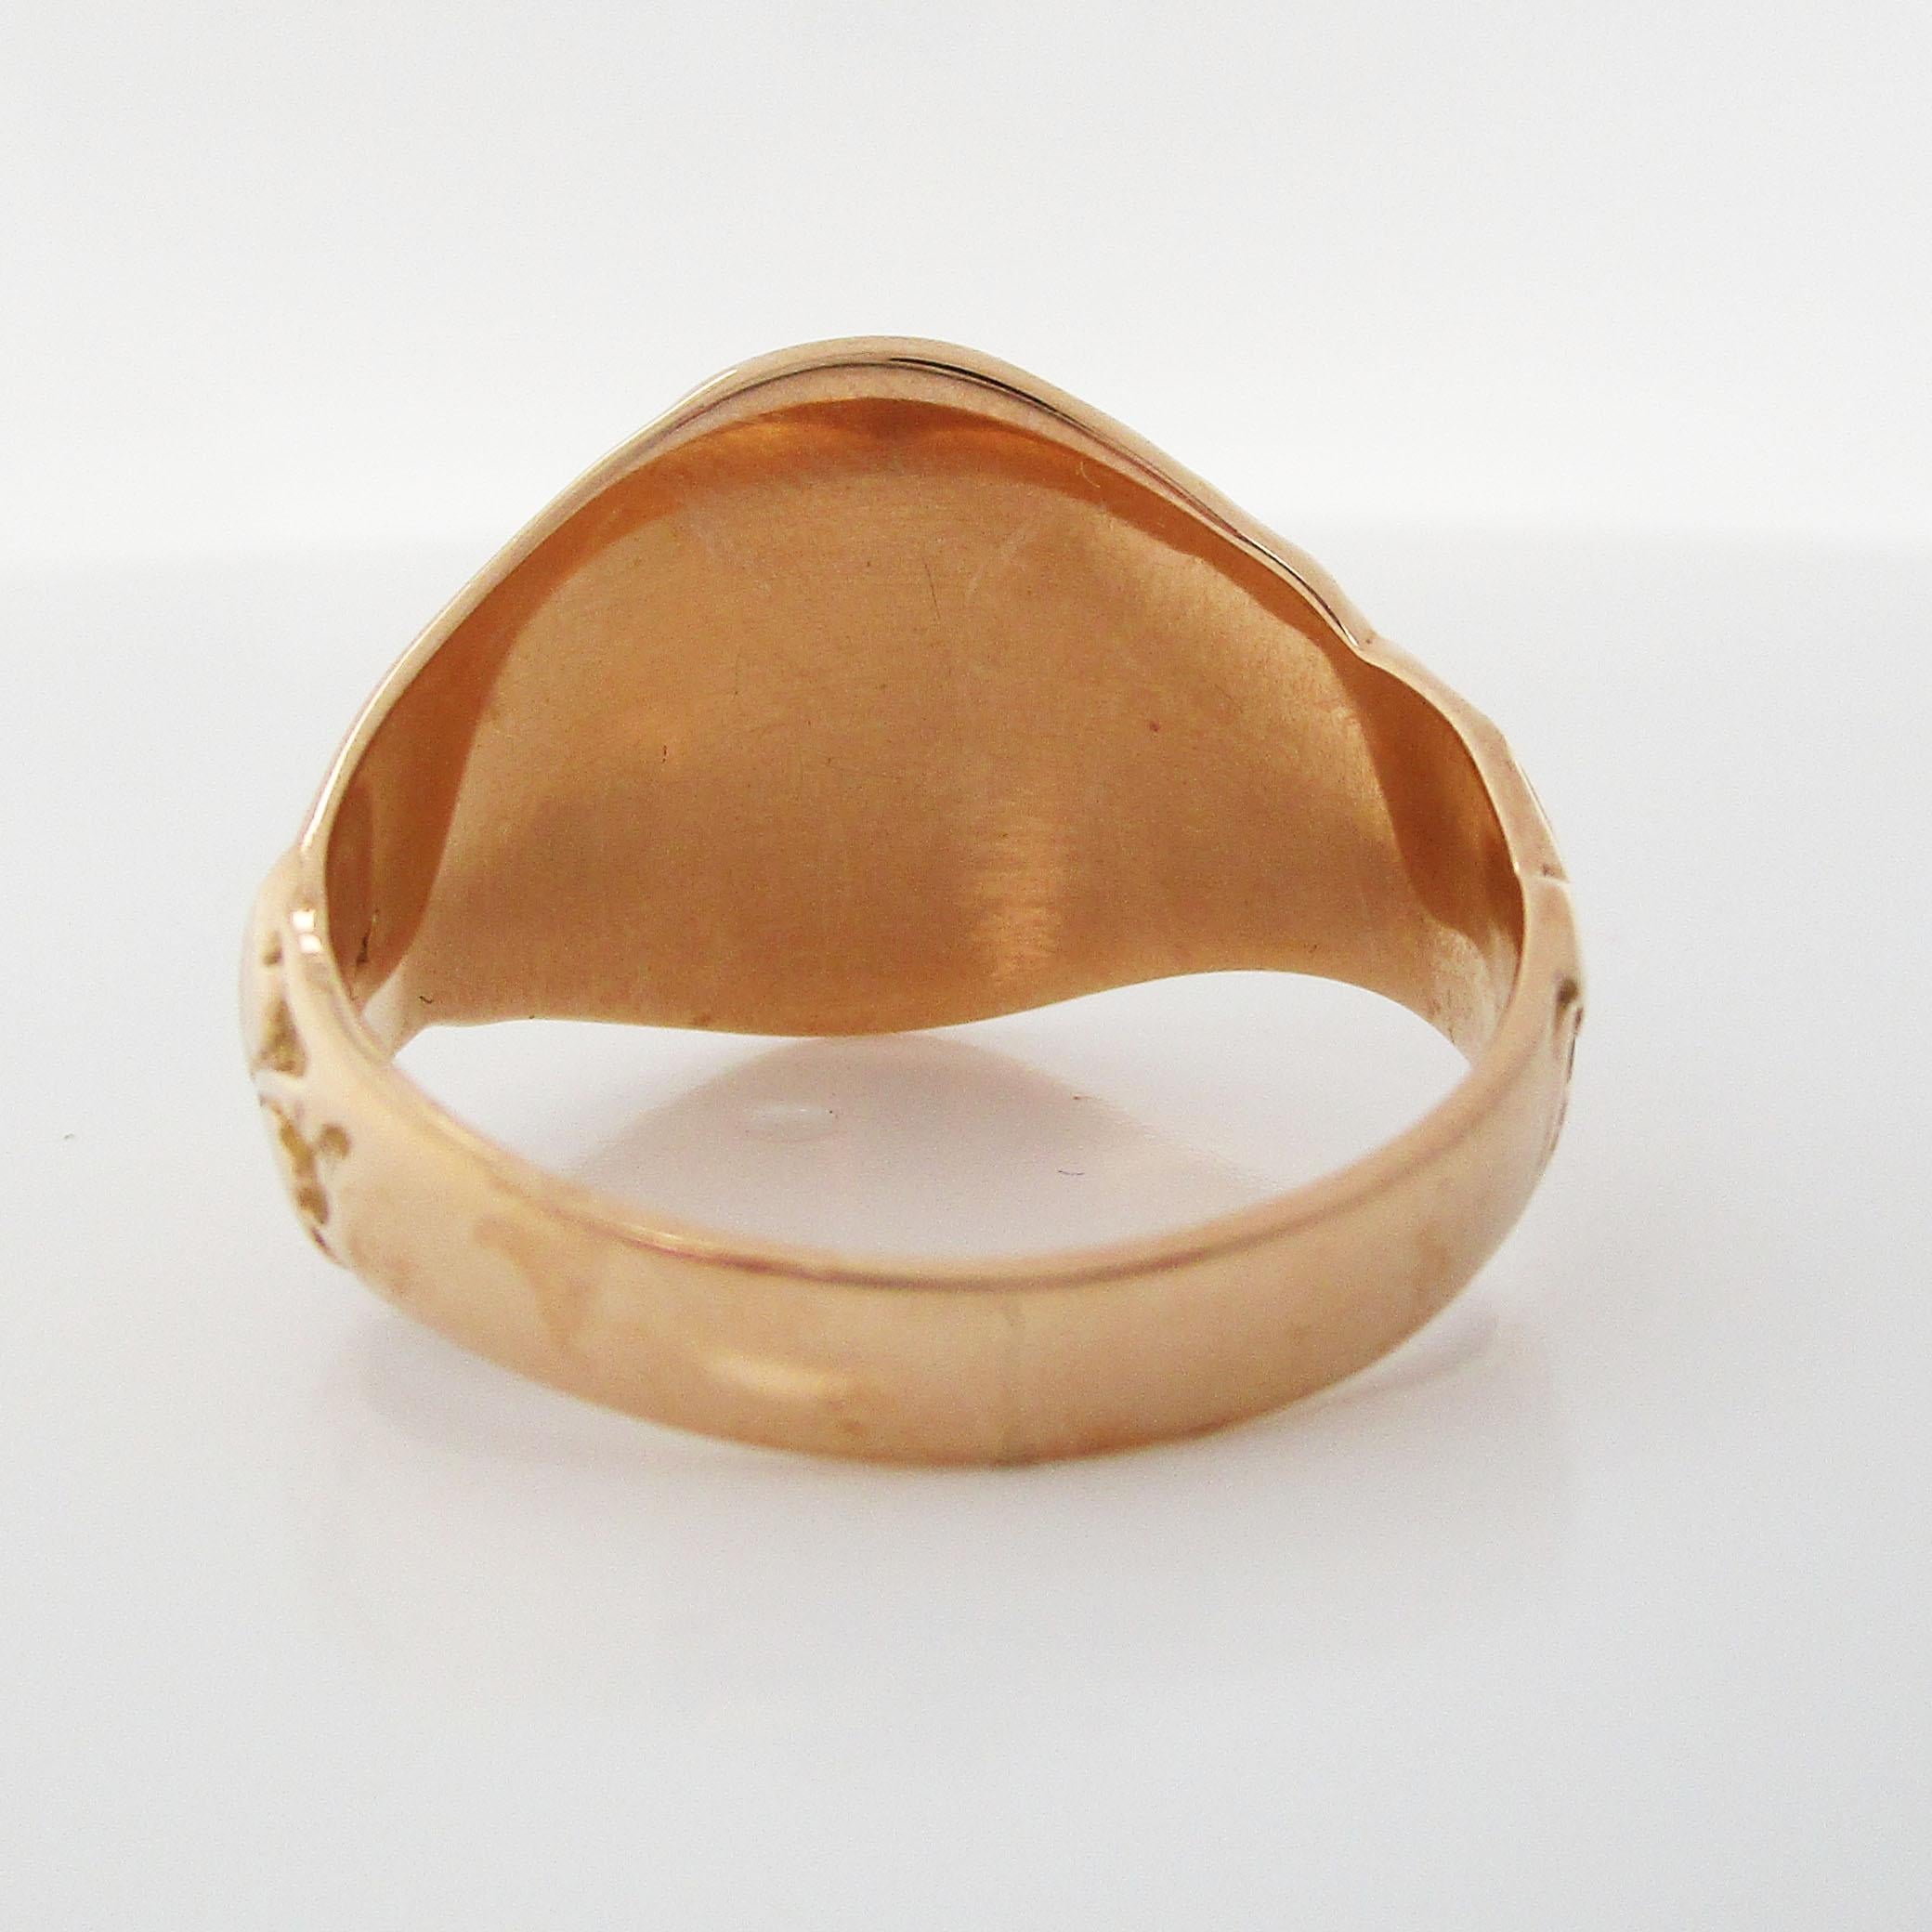 10 Karat Rose Gold Victorian Signet Ring with Engraving 4